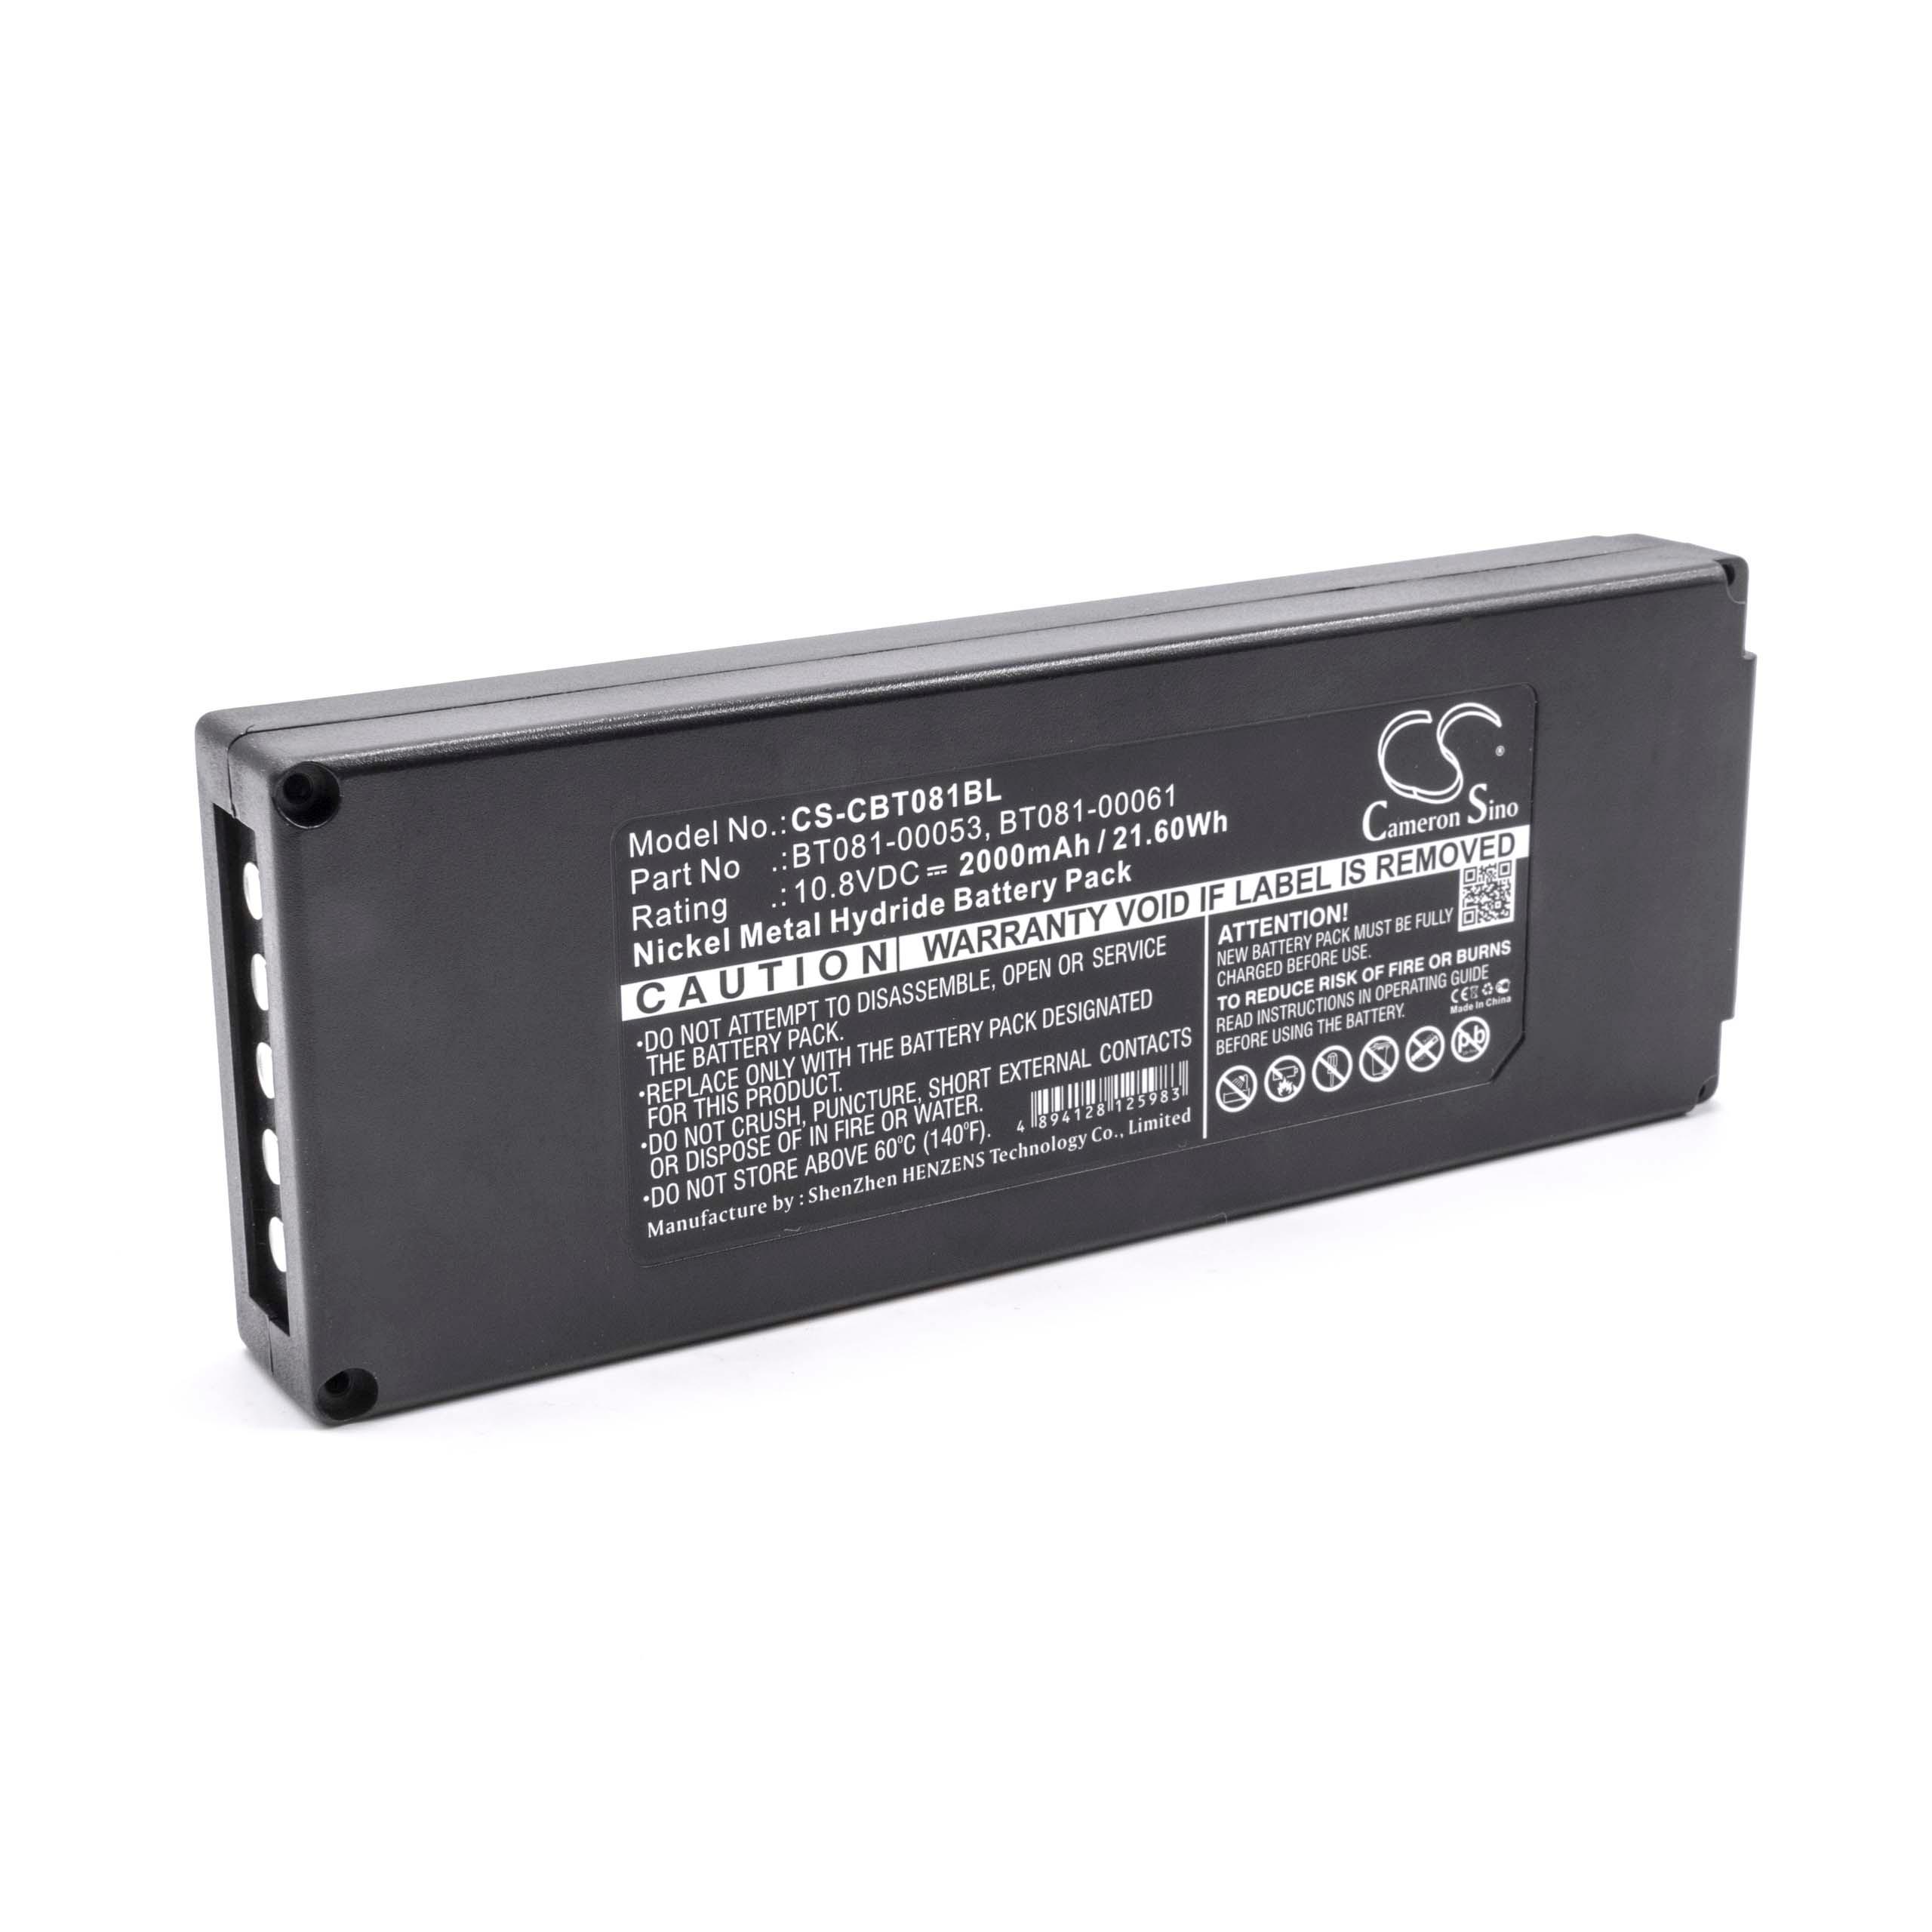 Batterie remplace Cattron-Theimeg BT081-00053, B5018-00061 pour télécommande - 2000mAh 10,8V NiMH